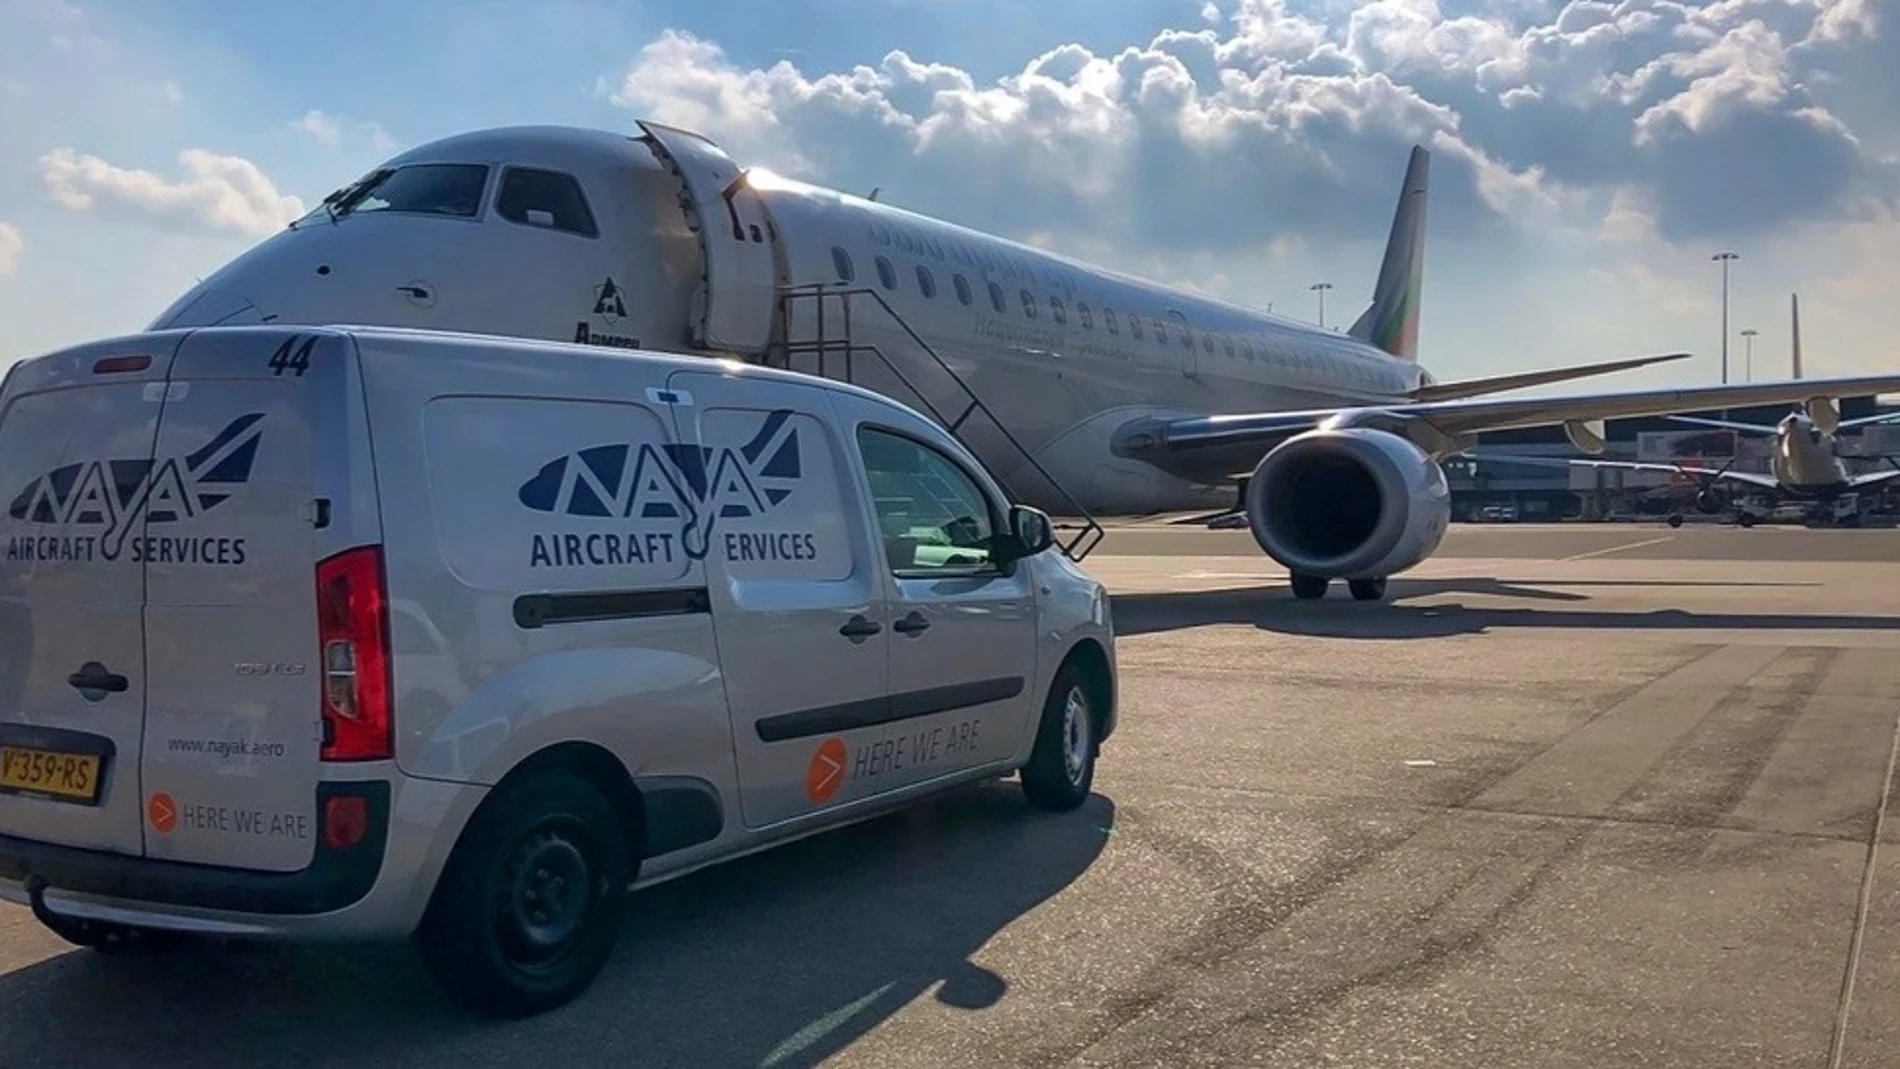 Nayak publica ofertas de empleo para el mantenimiento de aviones en España y Europa